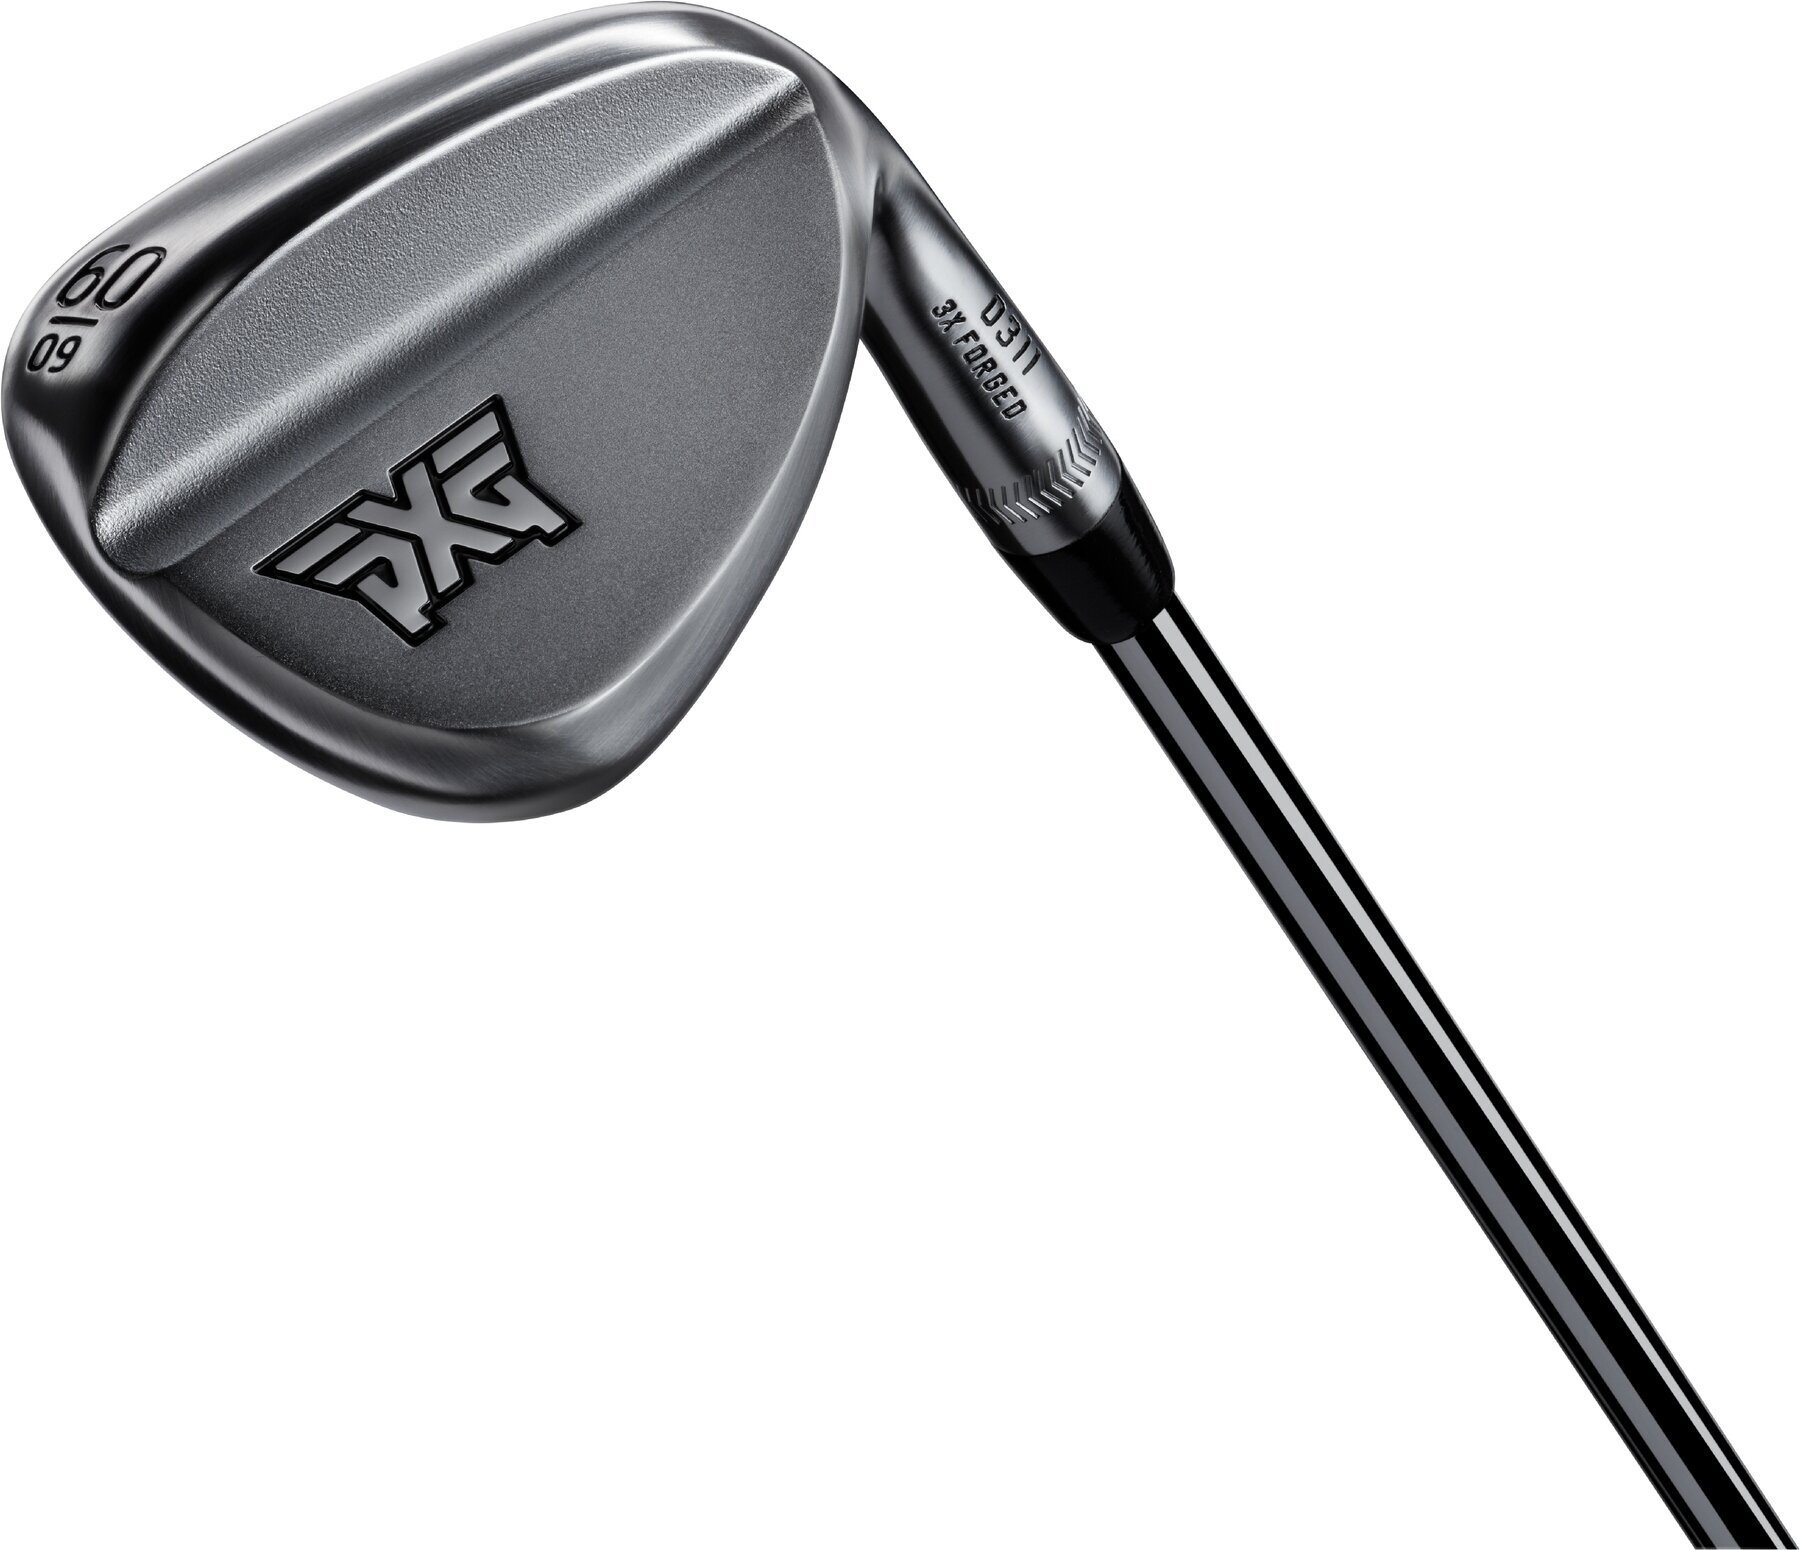 Golfkølle - Wedge PXG V3 0311 Forged Chrome Golfkølle - Wedge